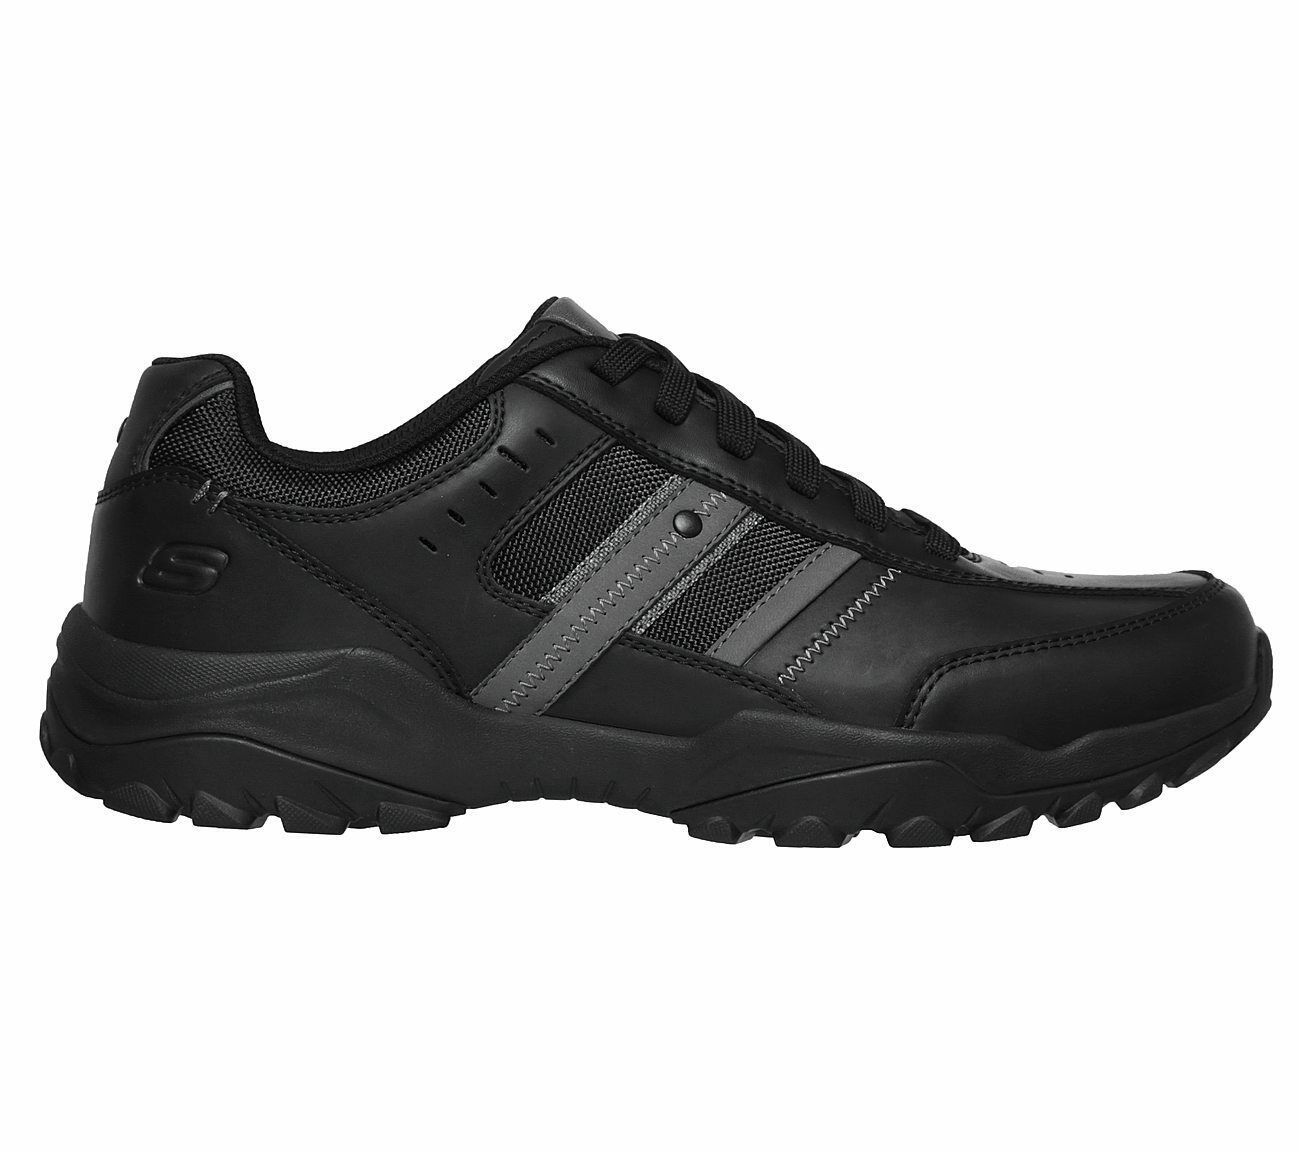 Skechers Black Extra Wide Fit shoes Men Memory Foam Sporty Casual ...